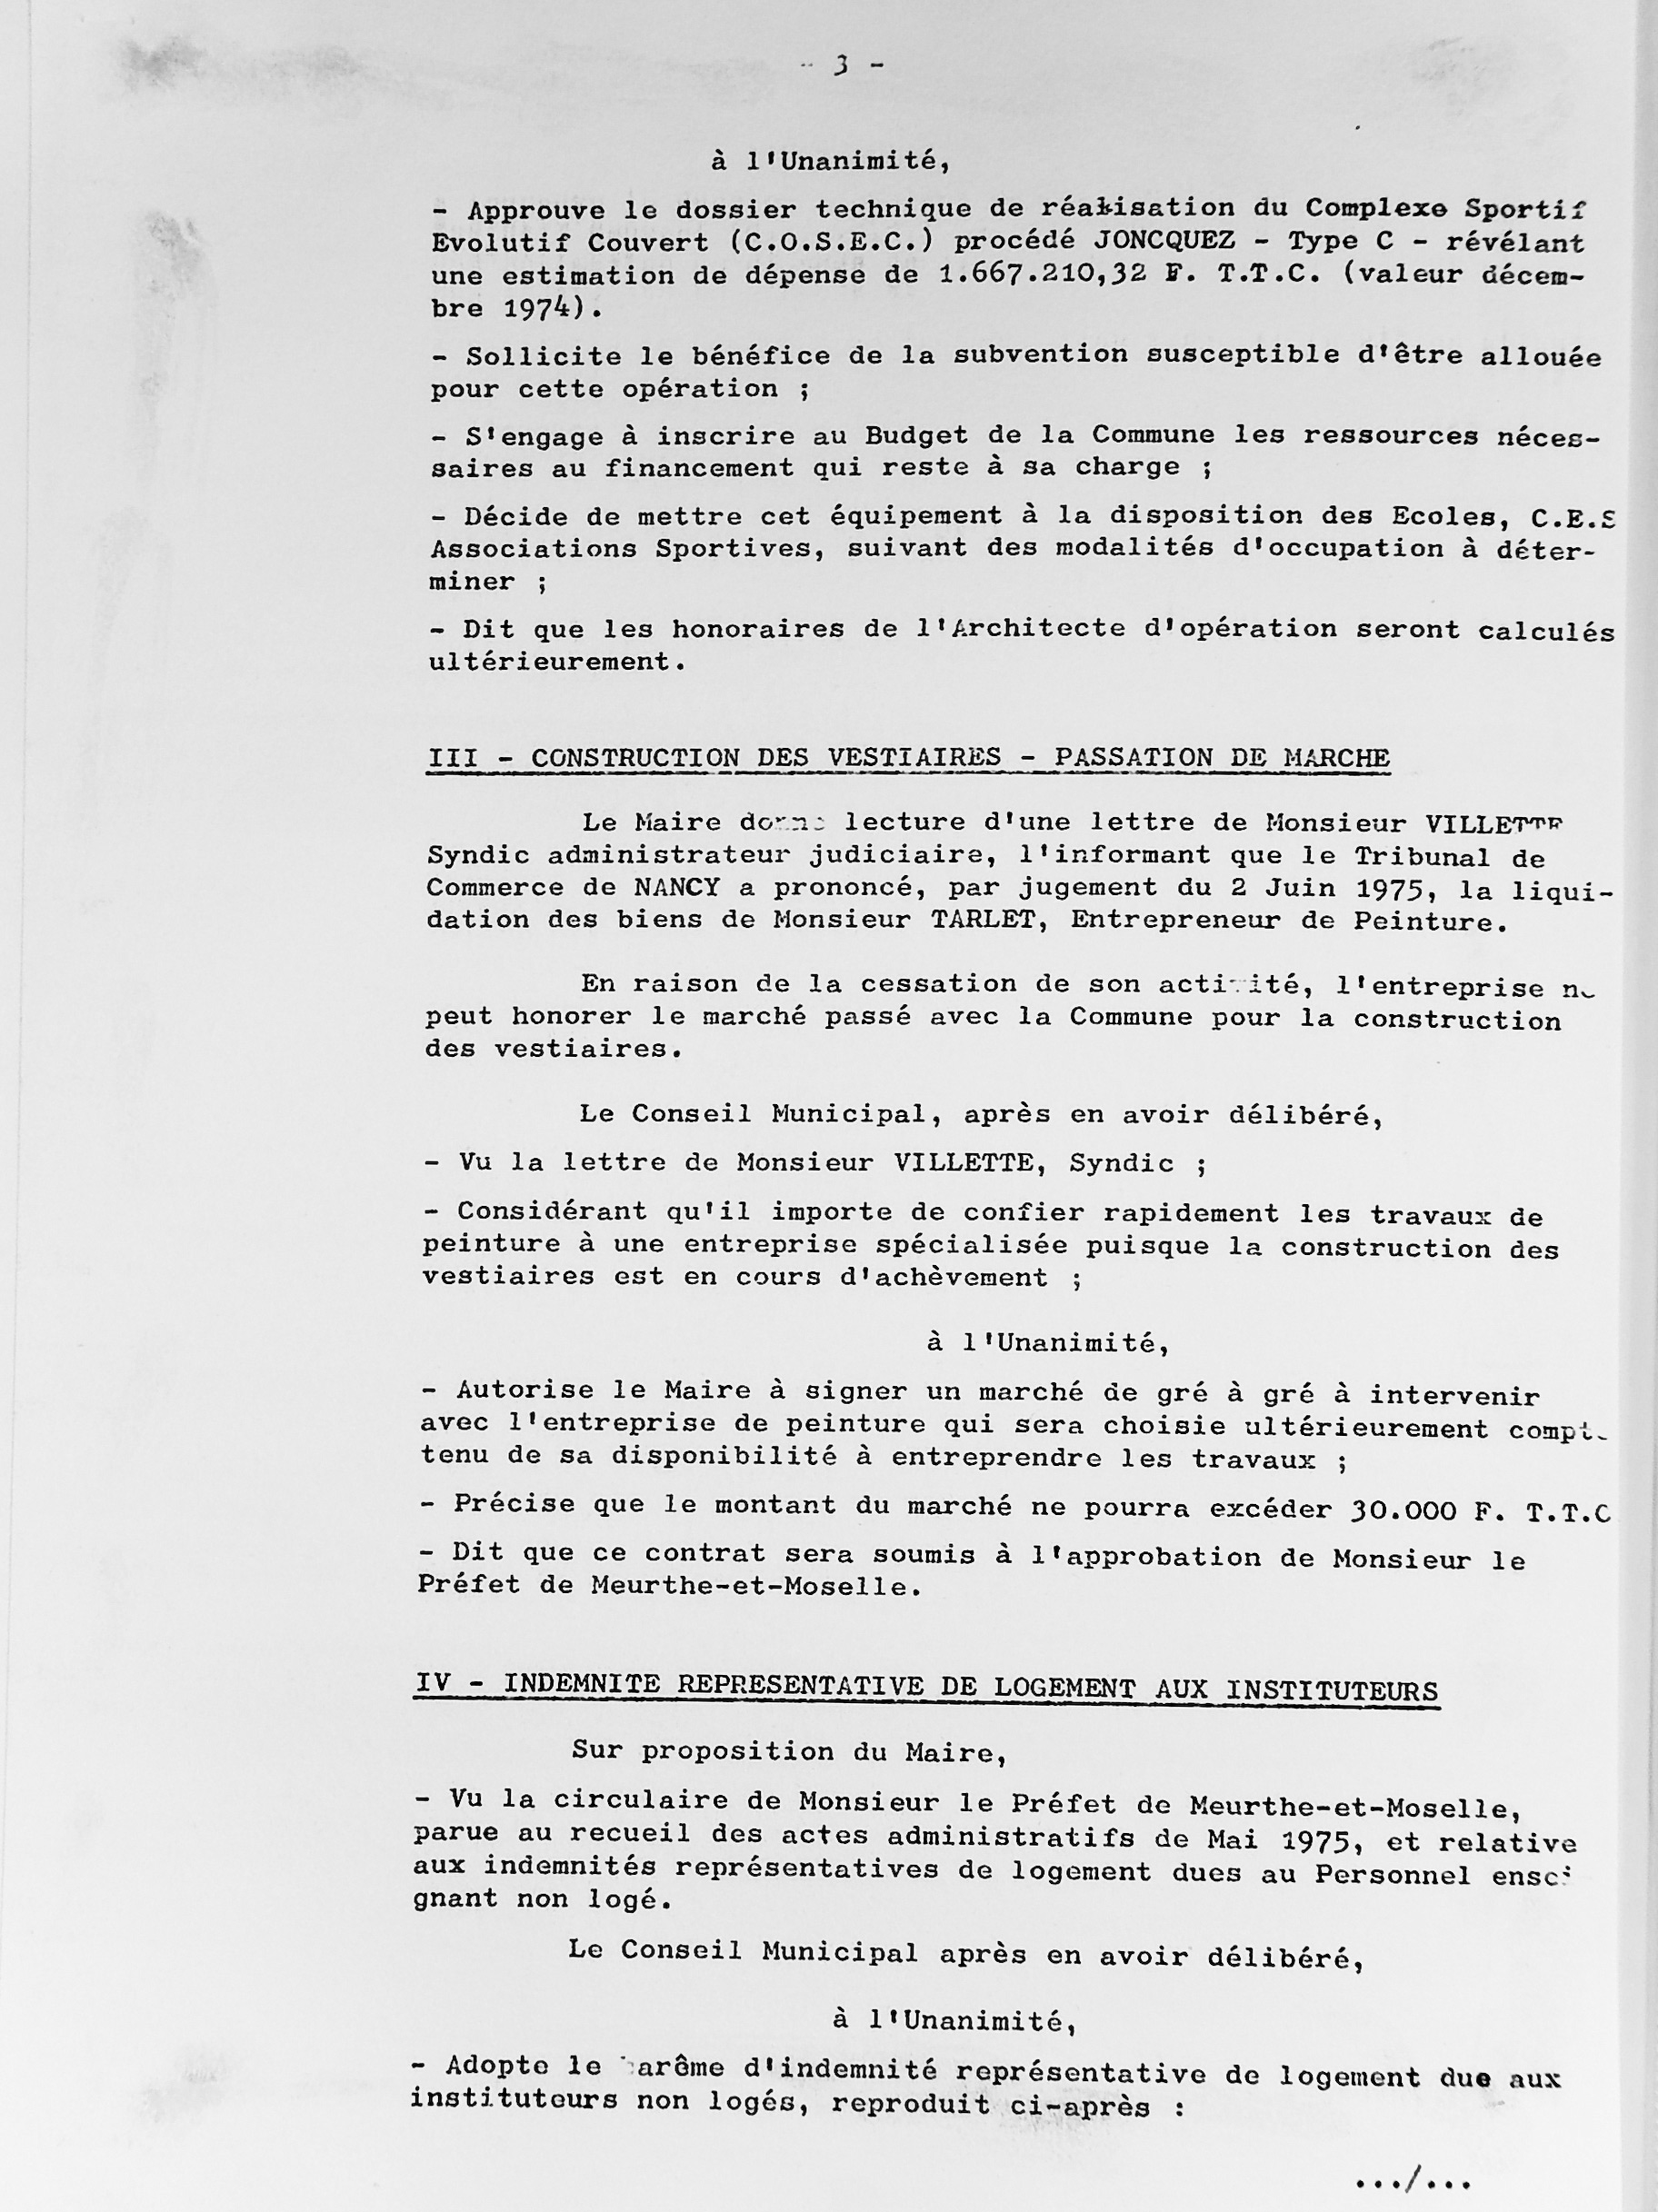 Feuillet_030B-1974-1977.jpg